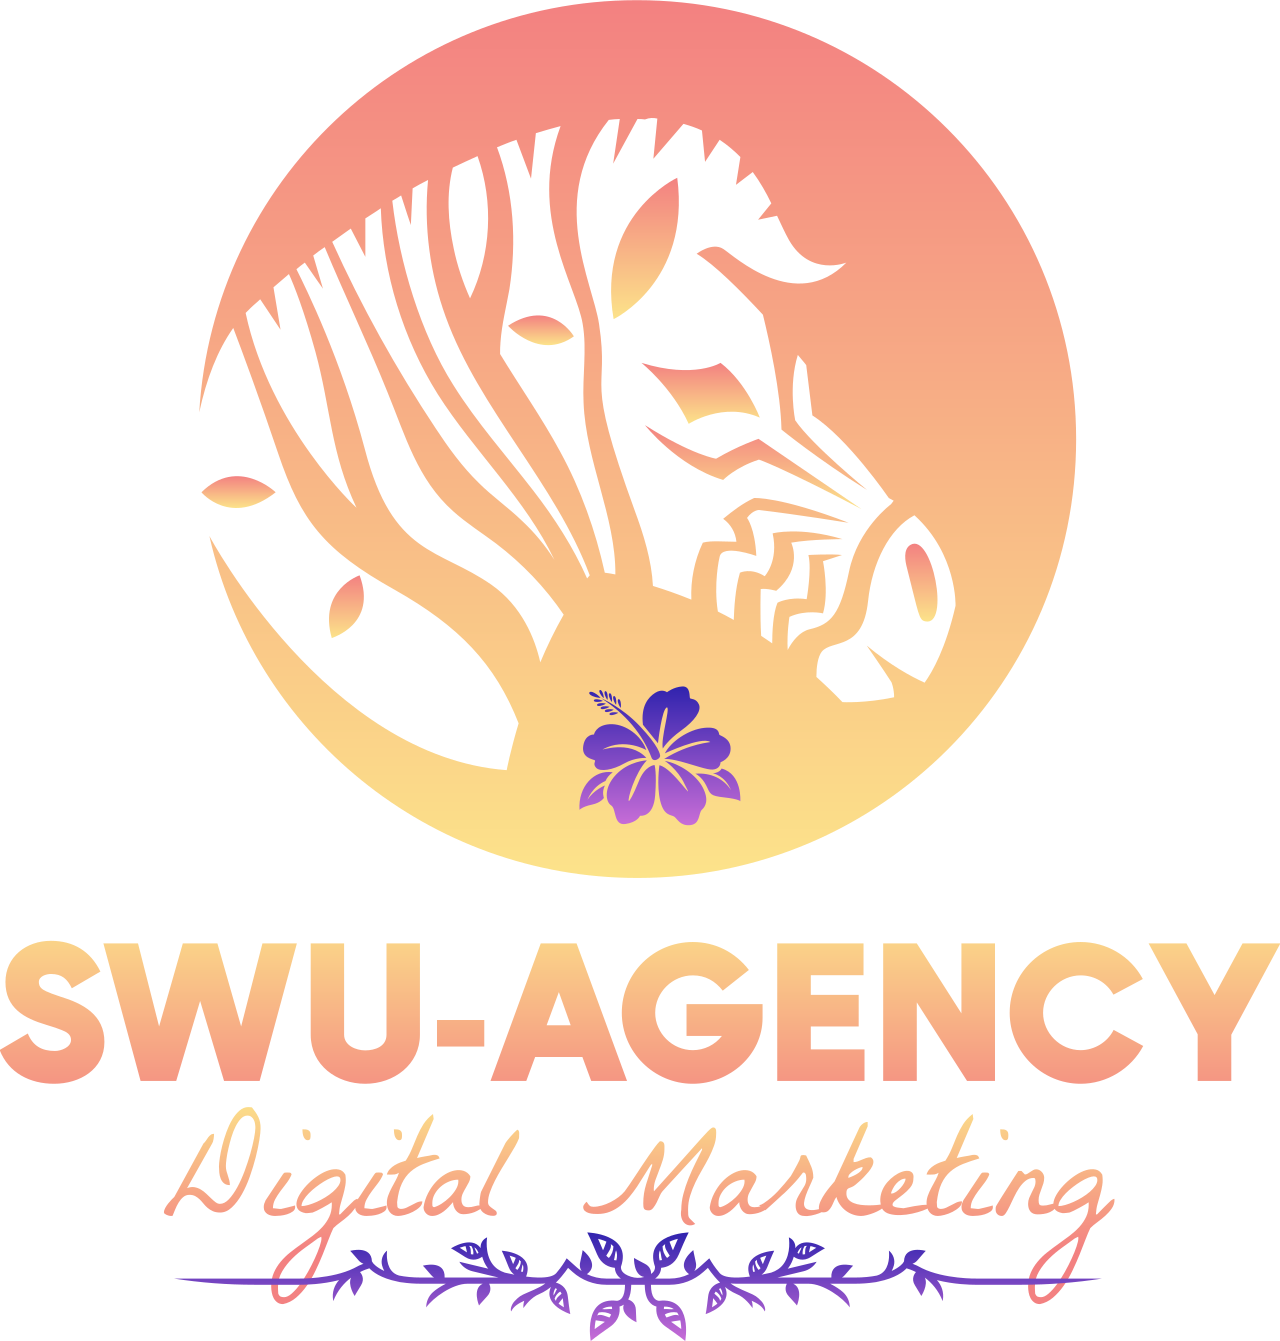 SWU-Agency's logo